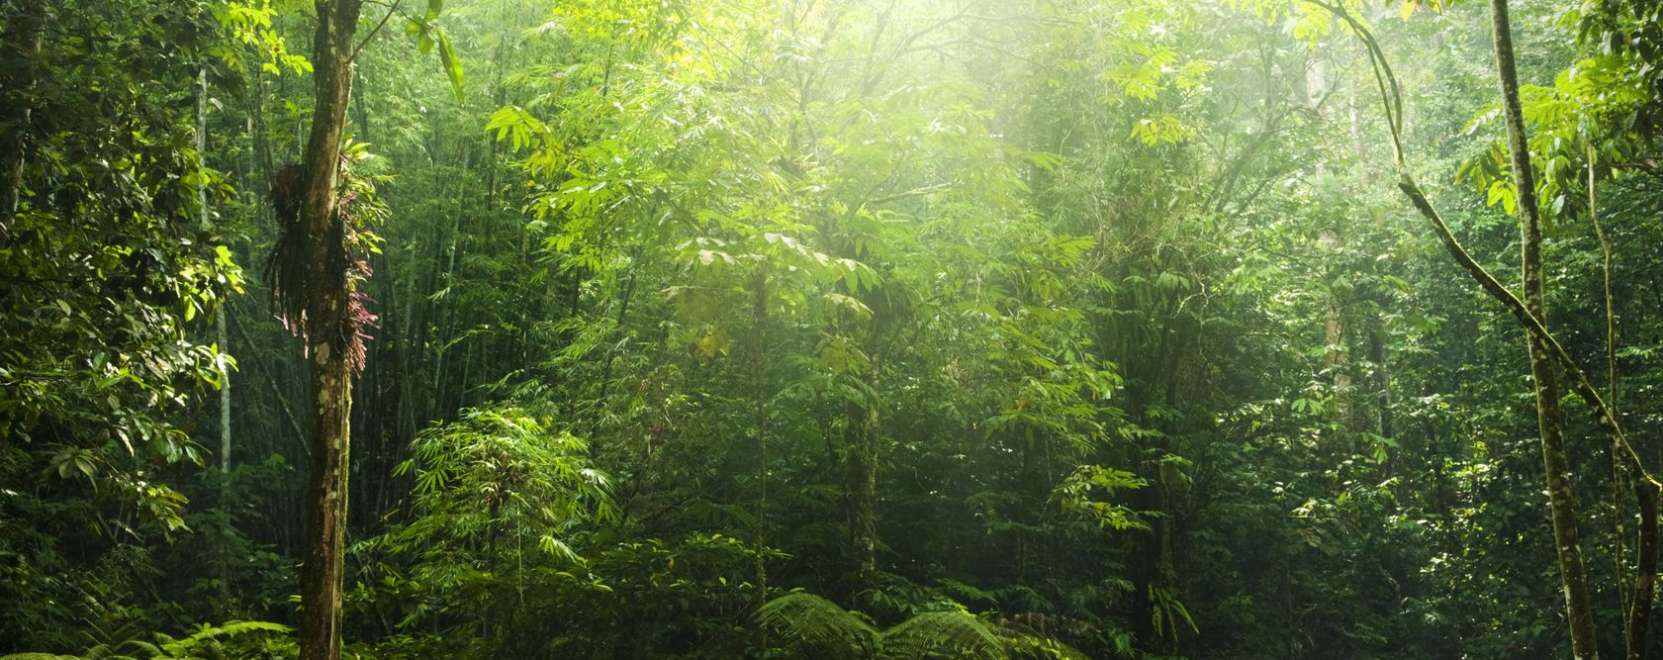 Így segíthet az IoT az esőerdők megmentésében